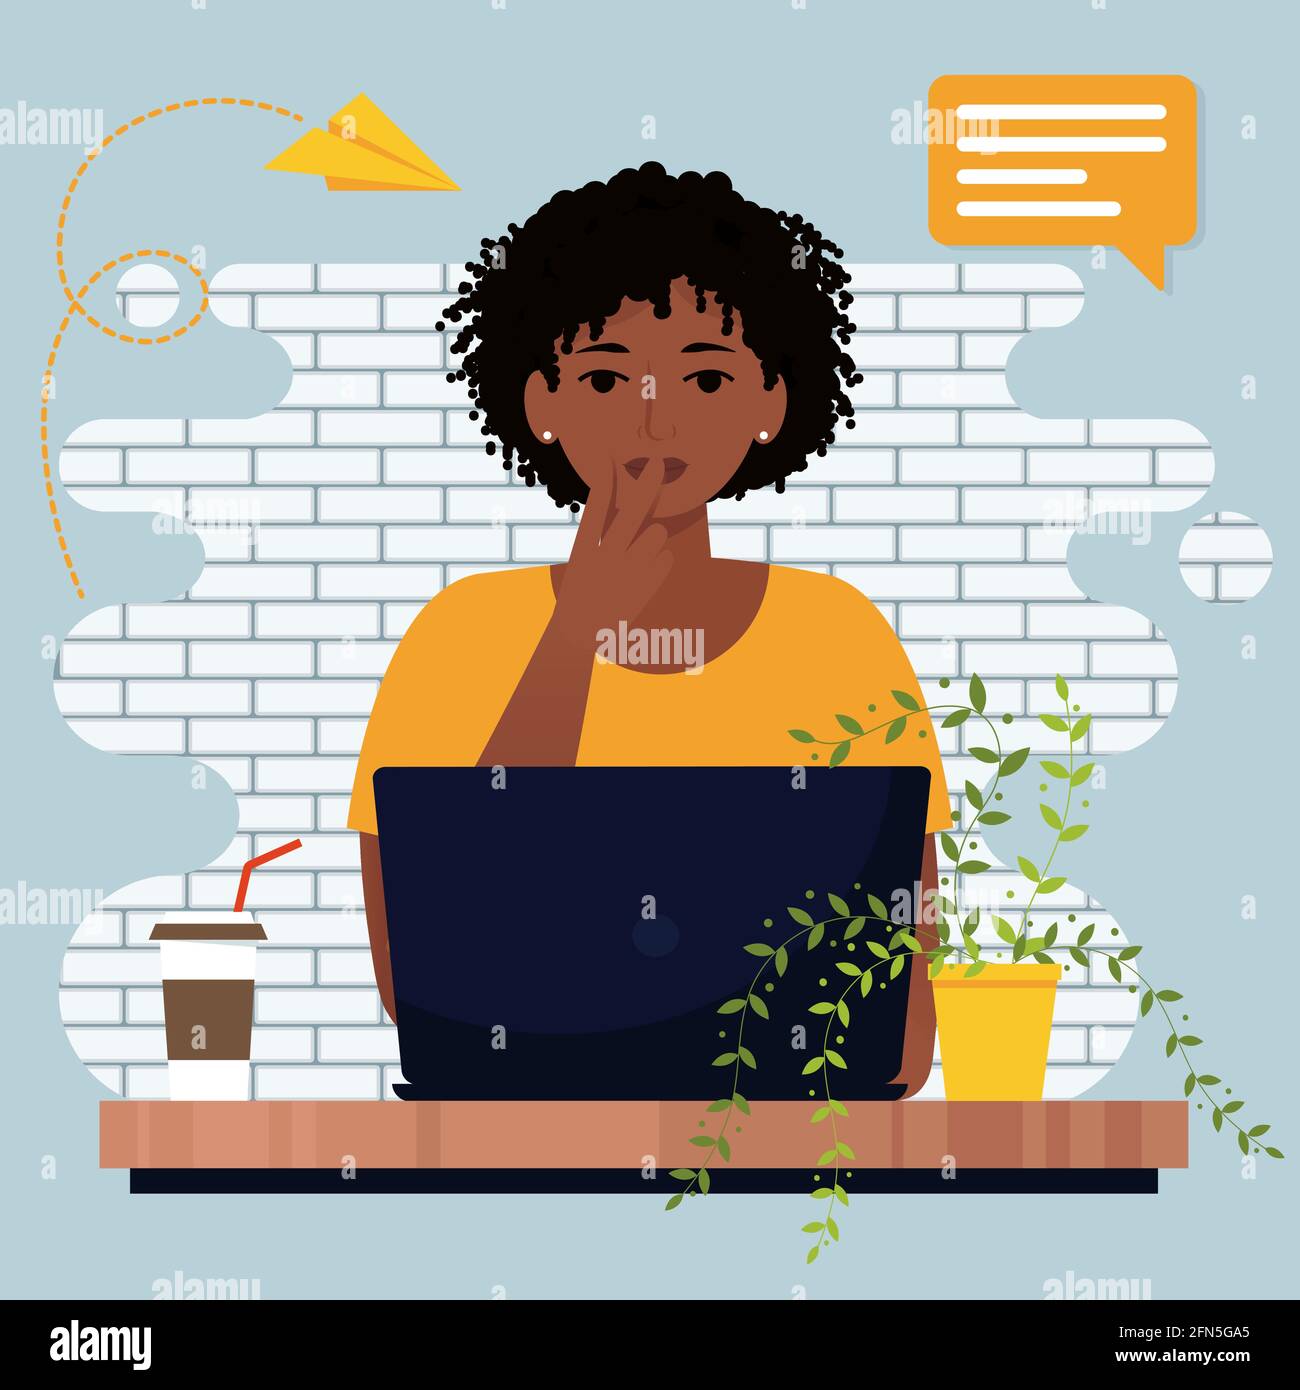 Denkende afrikanische Frau, die mit einem Laptop arbeitet. Niedliche Vektor-Illustration in flachem Stil Stock Vektor